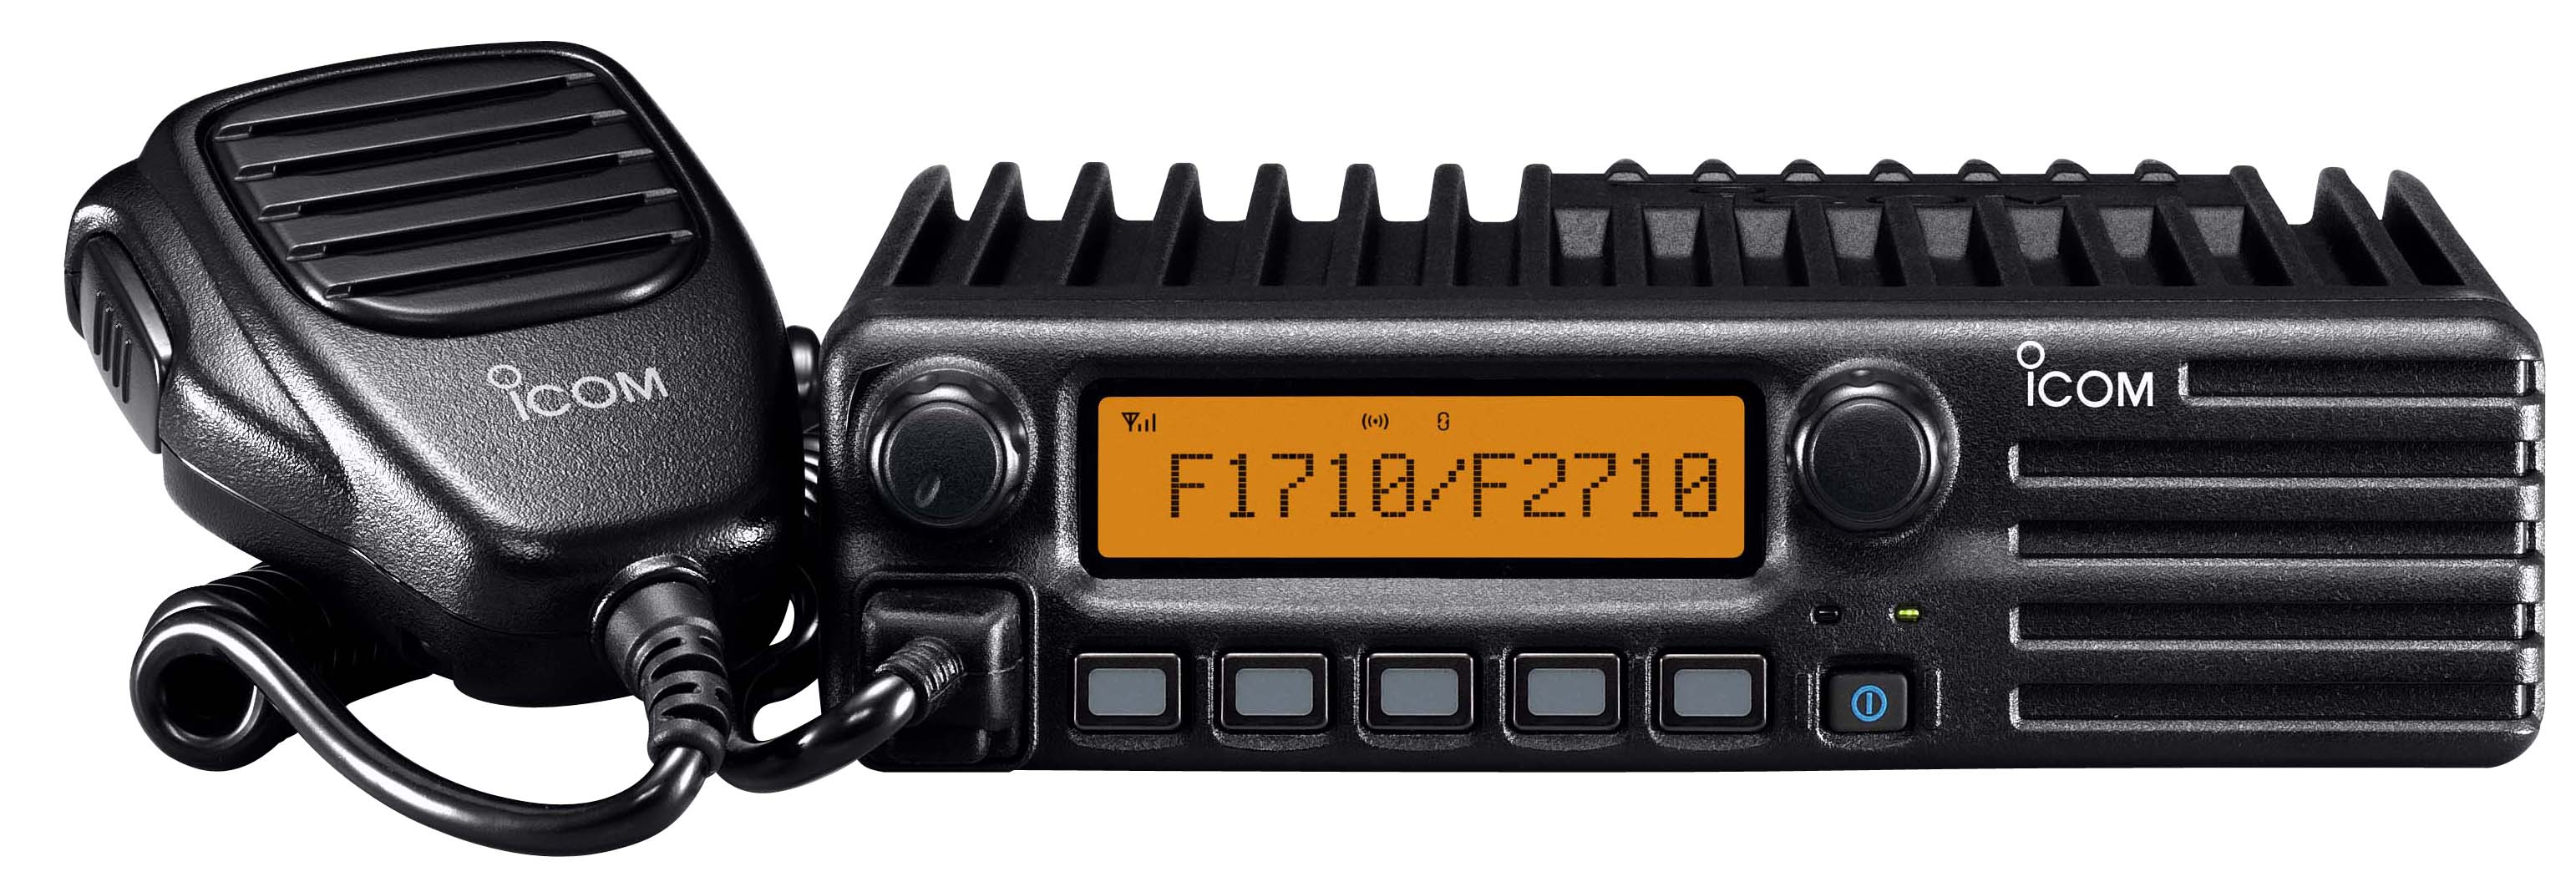 Автомобильные/стационарные радиостанции профессионального назначения ICOM IC-F1710/F2710, IC-F1810/F2810